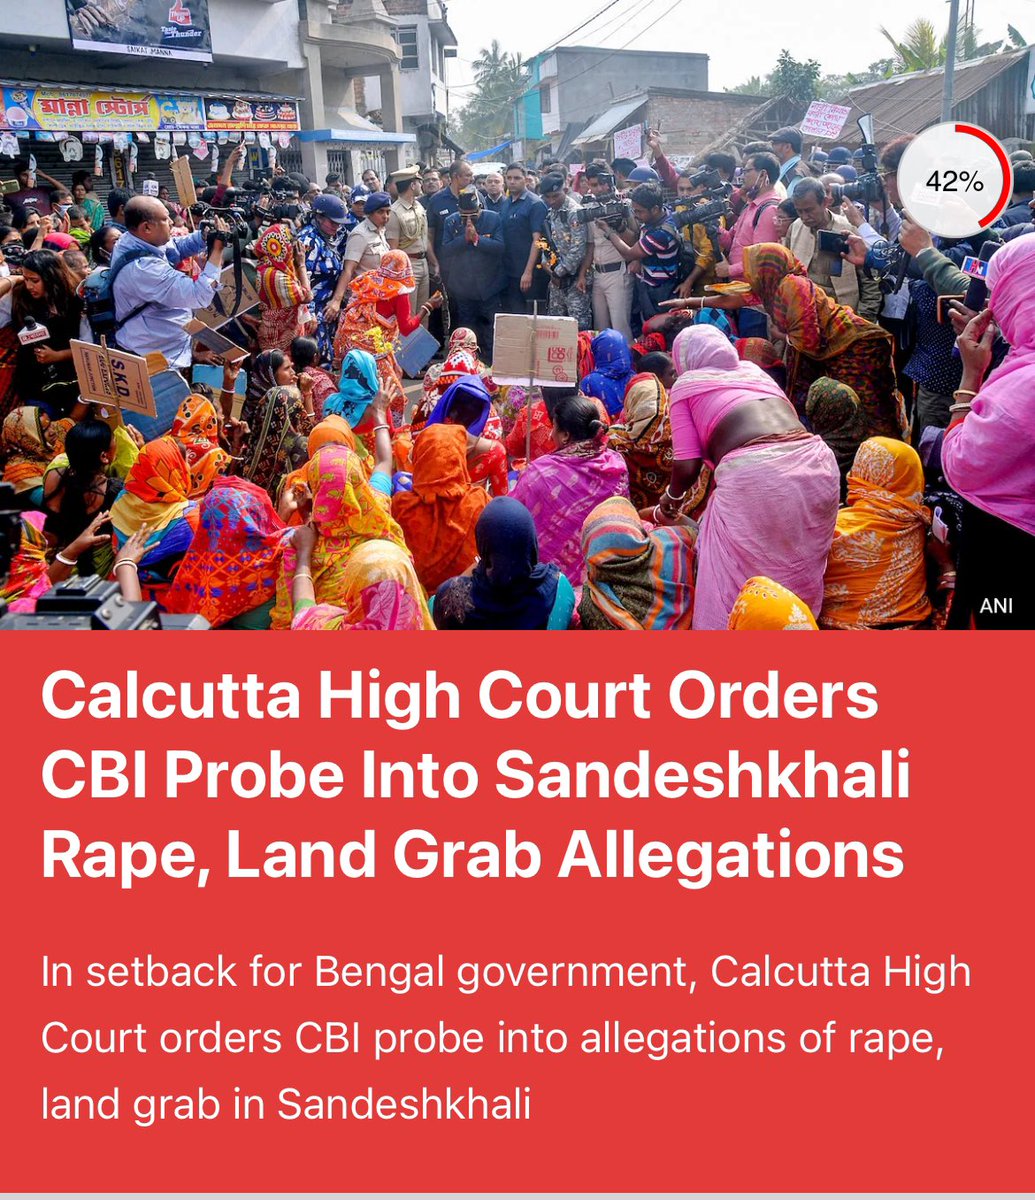 Finally! Hope for justice. 
#SandeshkhaliHorror